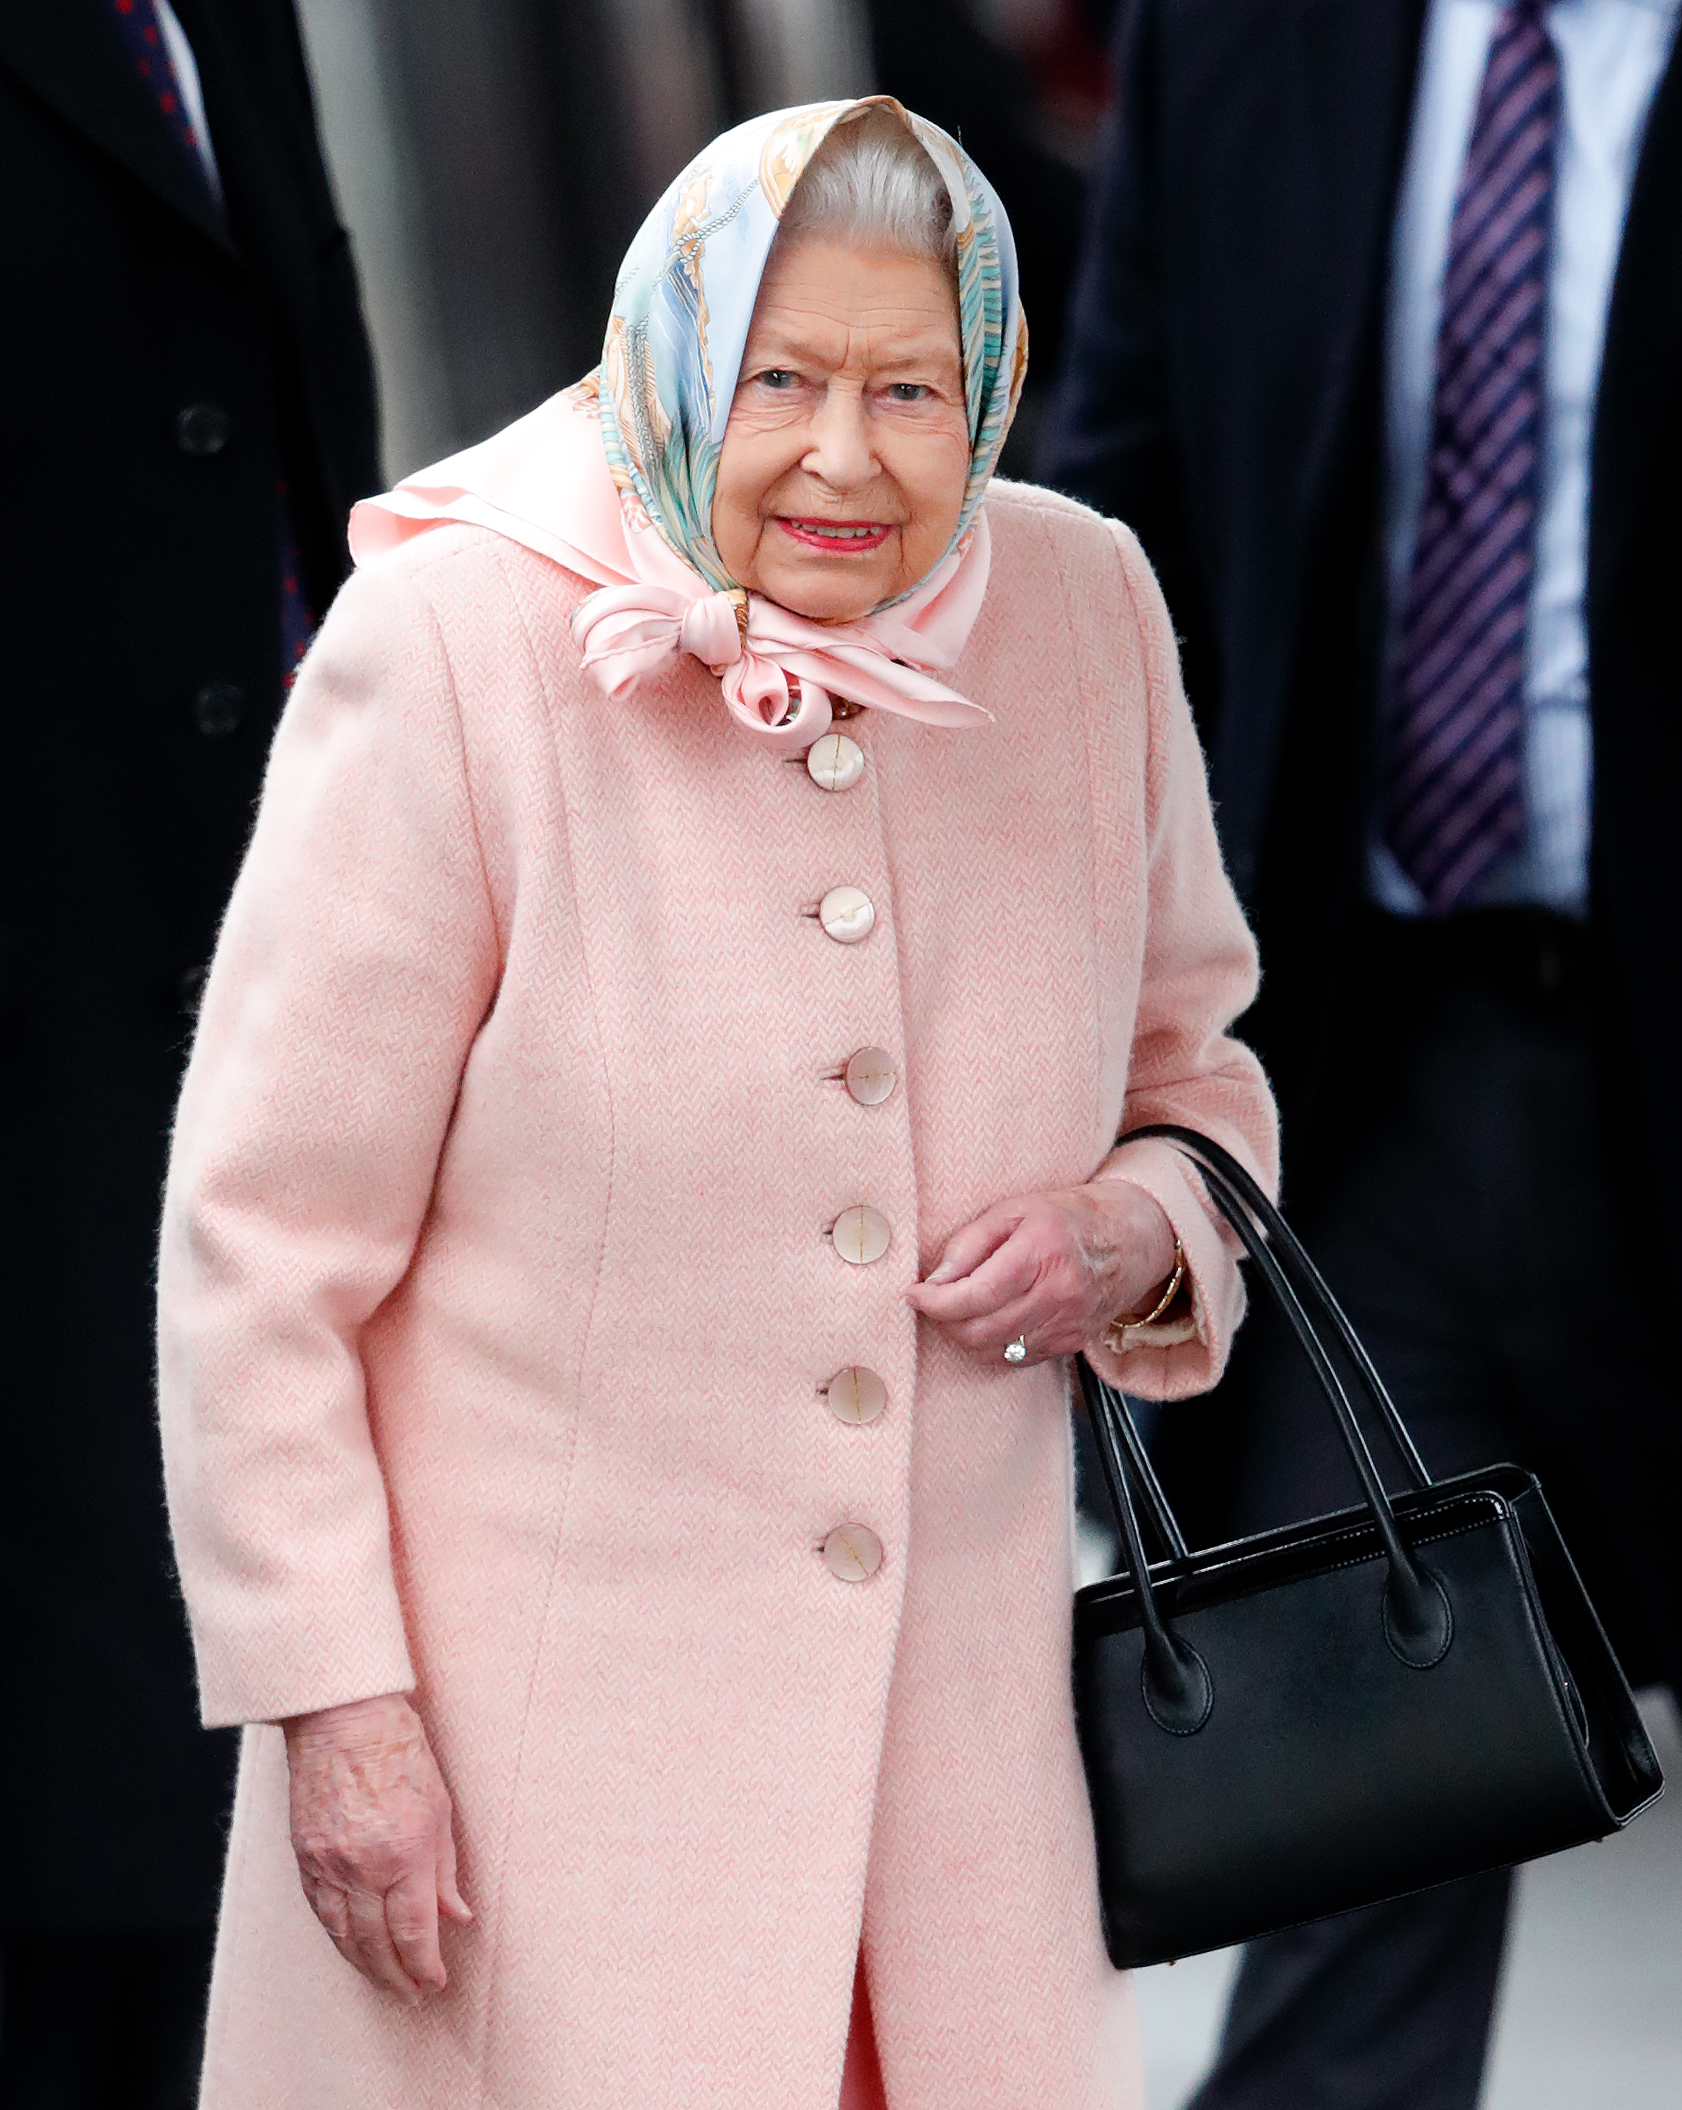 La difunta reina Elizabeth II en la estación de tren de King's Lynn, en King's Lynn, Inglaterra, el 20 de diciembre de 2019 | Fuente: Getty Images